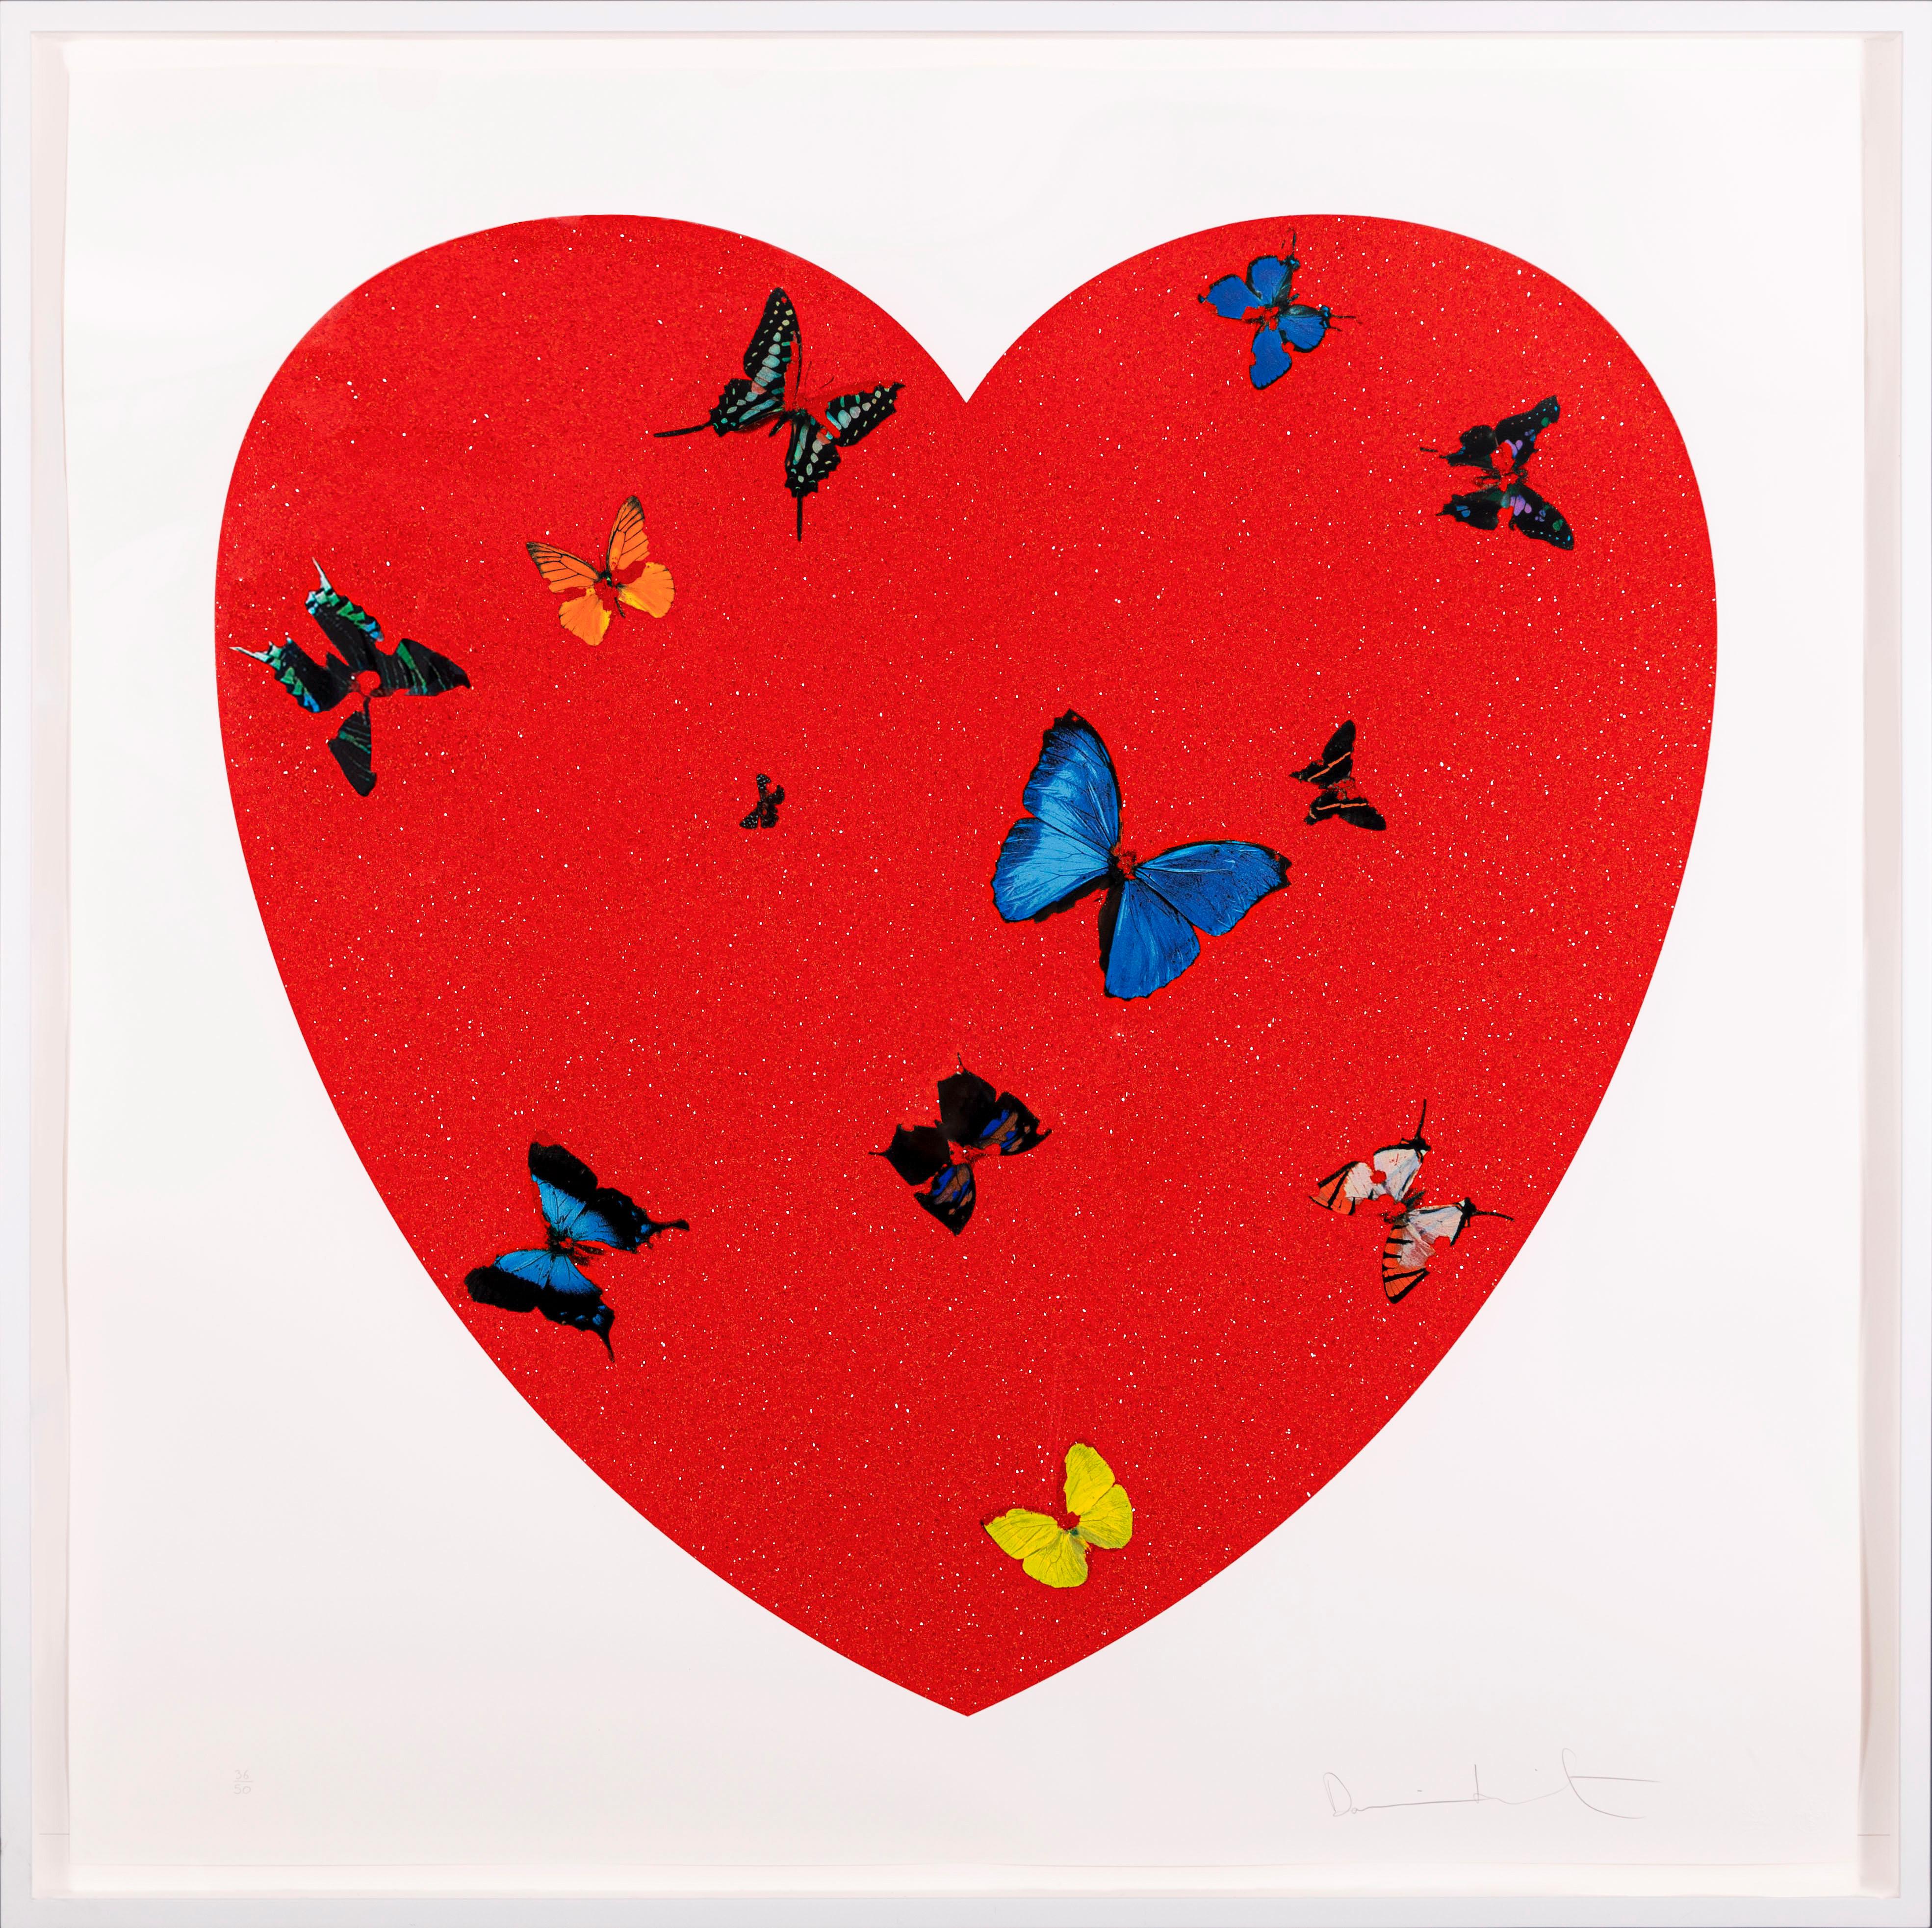 Le cœur papillon "All You Need Is Love, Love, Love" avec poussière de diamant de l'artiste contemporain Damien Hirst a été créé en 2010. Il est signé et numéroté par l'Artistics et porte le cachet de l'éditeur. Publié par Other Criteria, Londres.